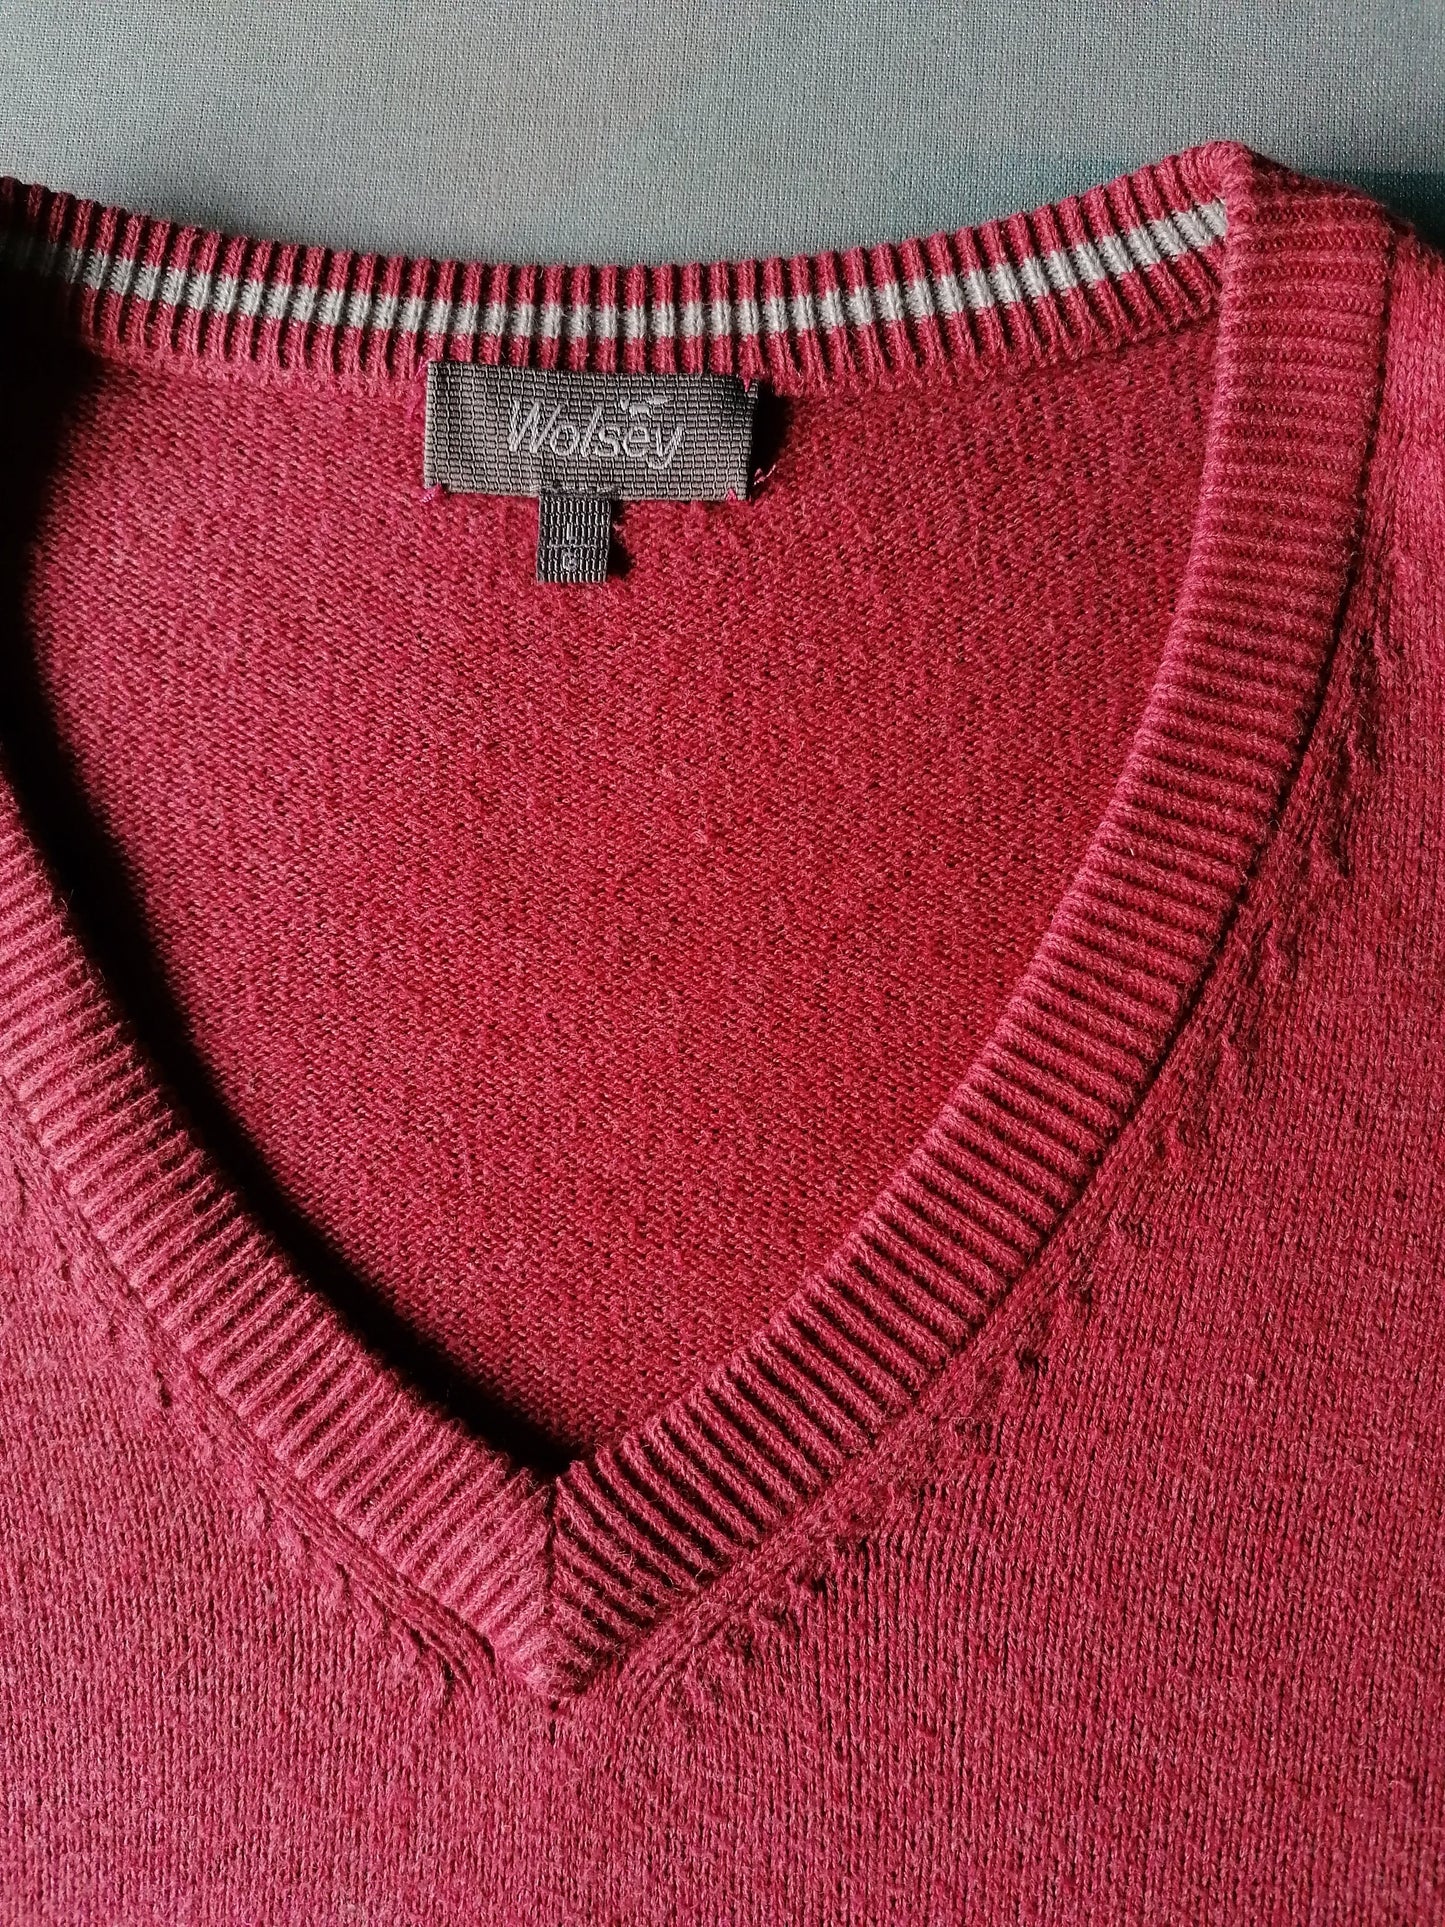 Wolsey-Pullover mit V-Ausschnitt. Dunkelrosa farbig. Größe L.